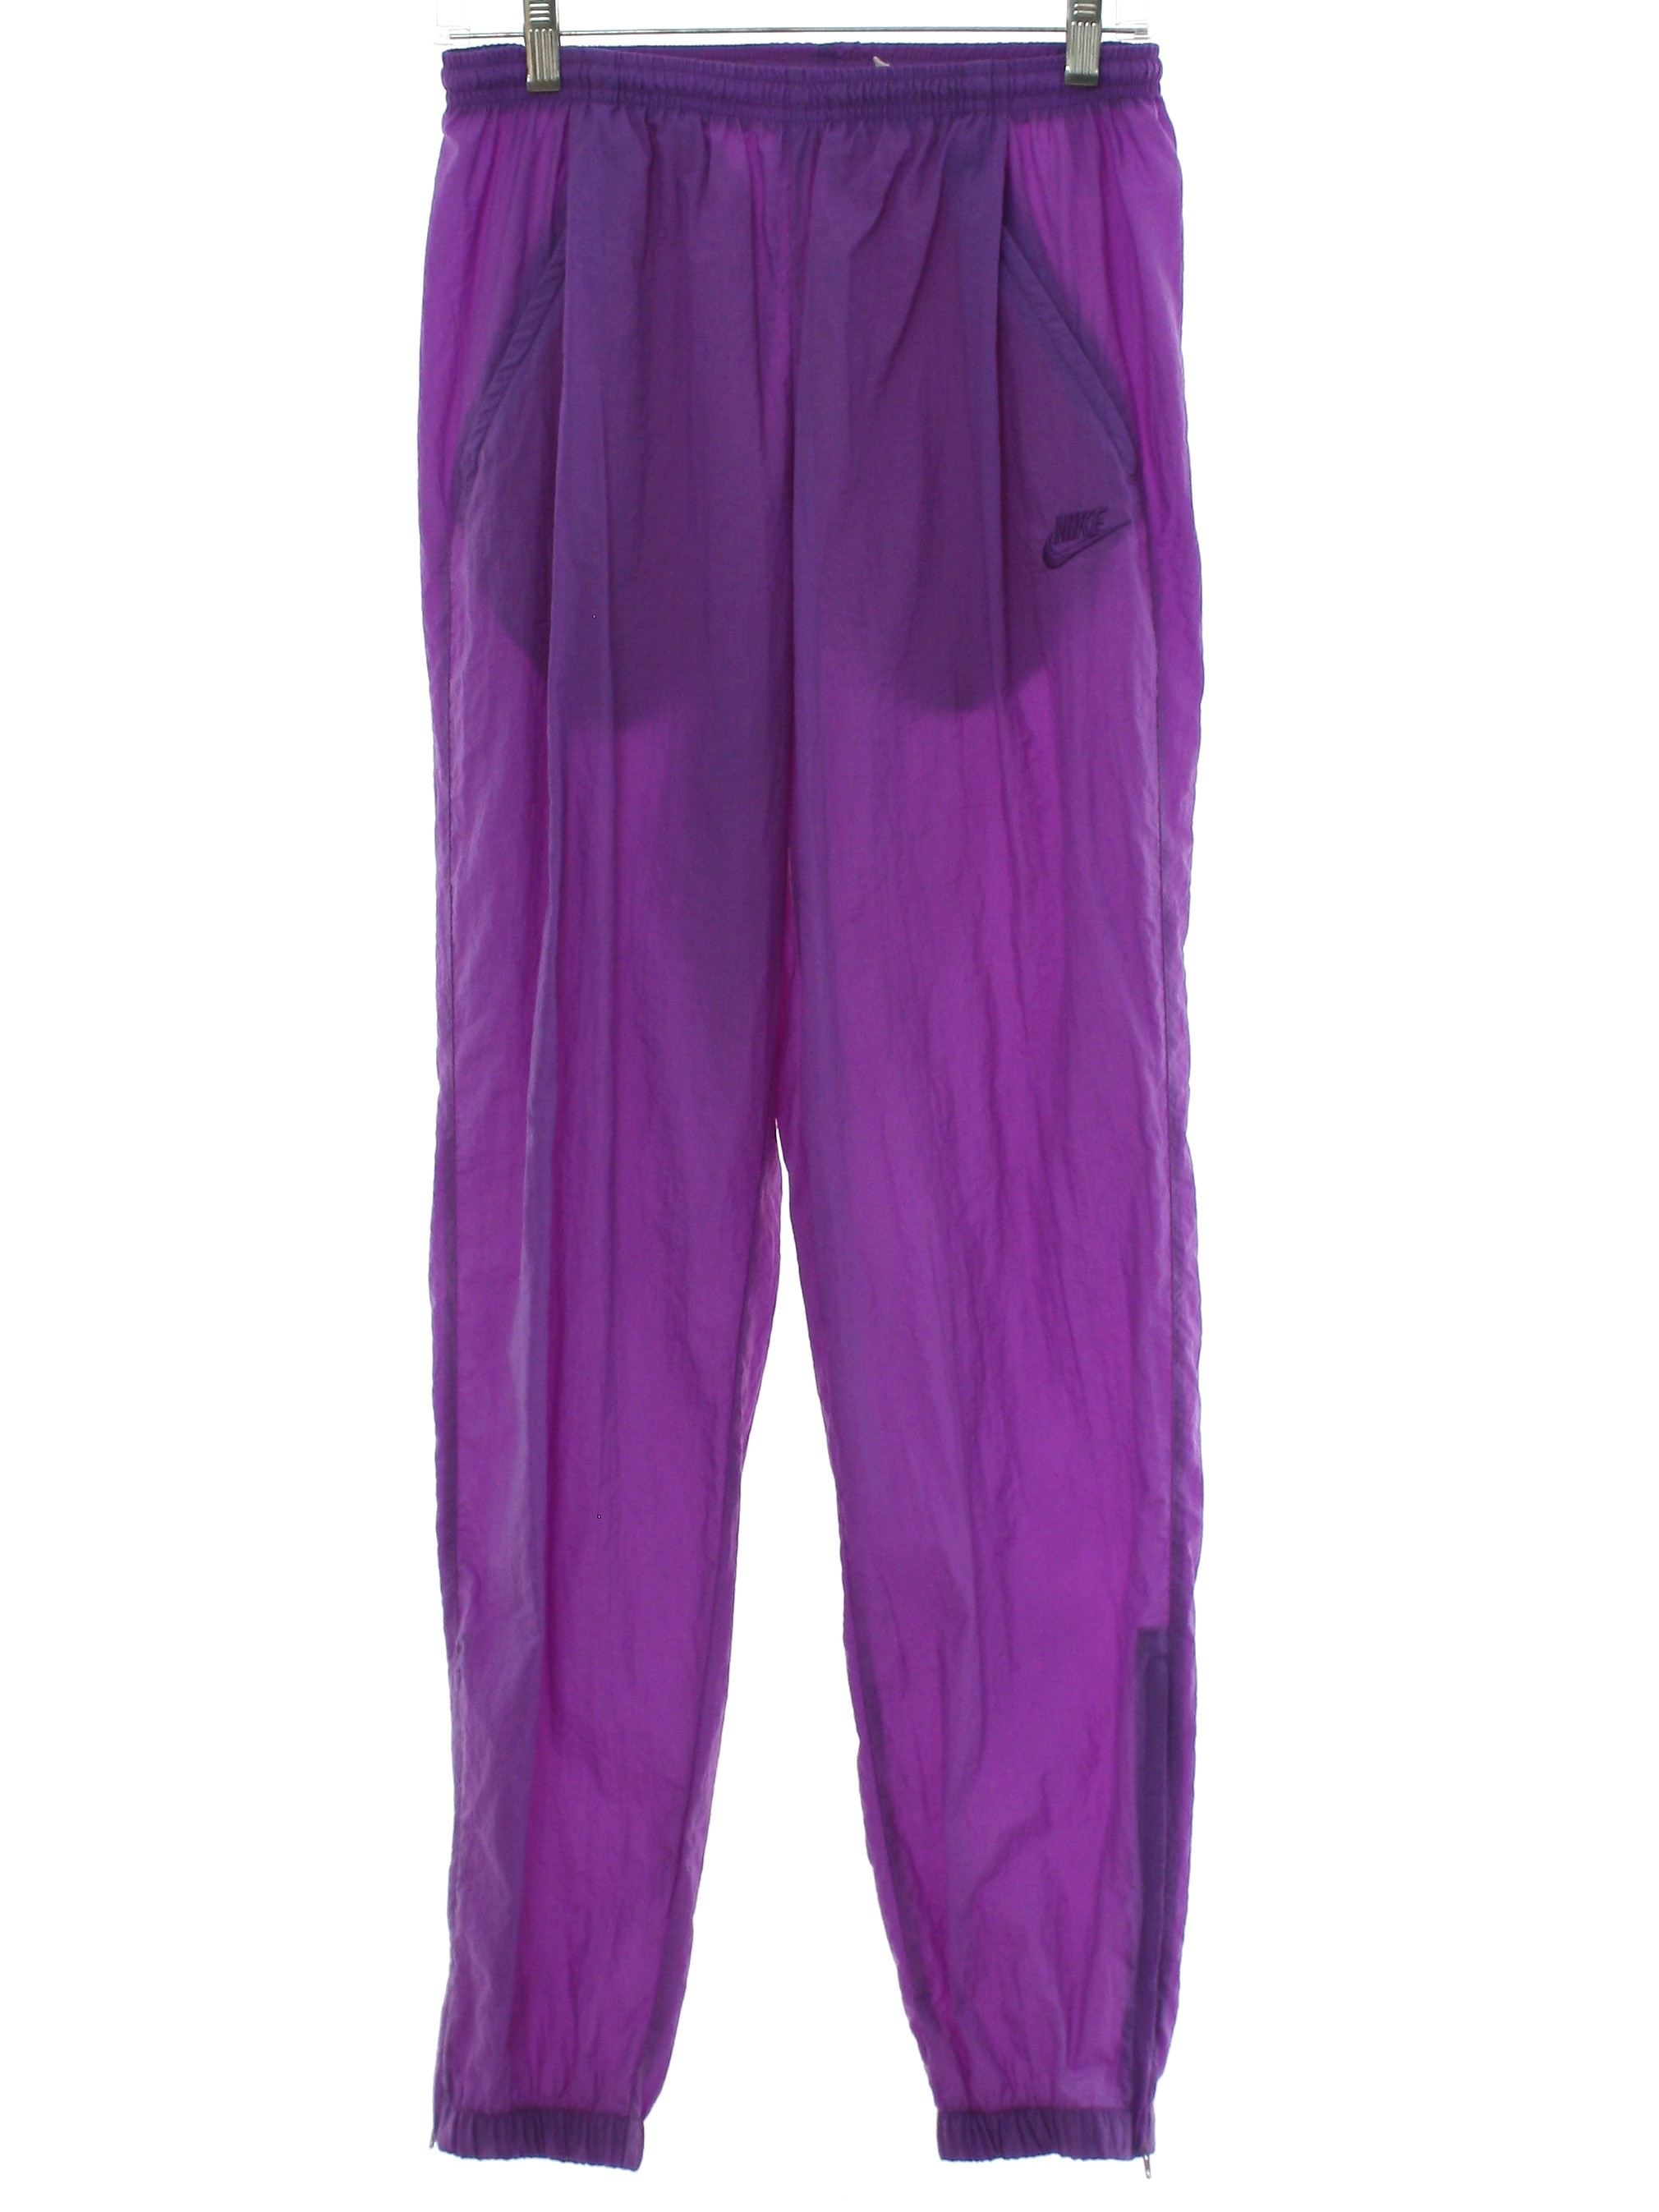 Vintage Nike 80's Pants: 90s -Nike- Womens purple nylon track